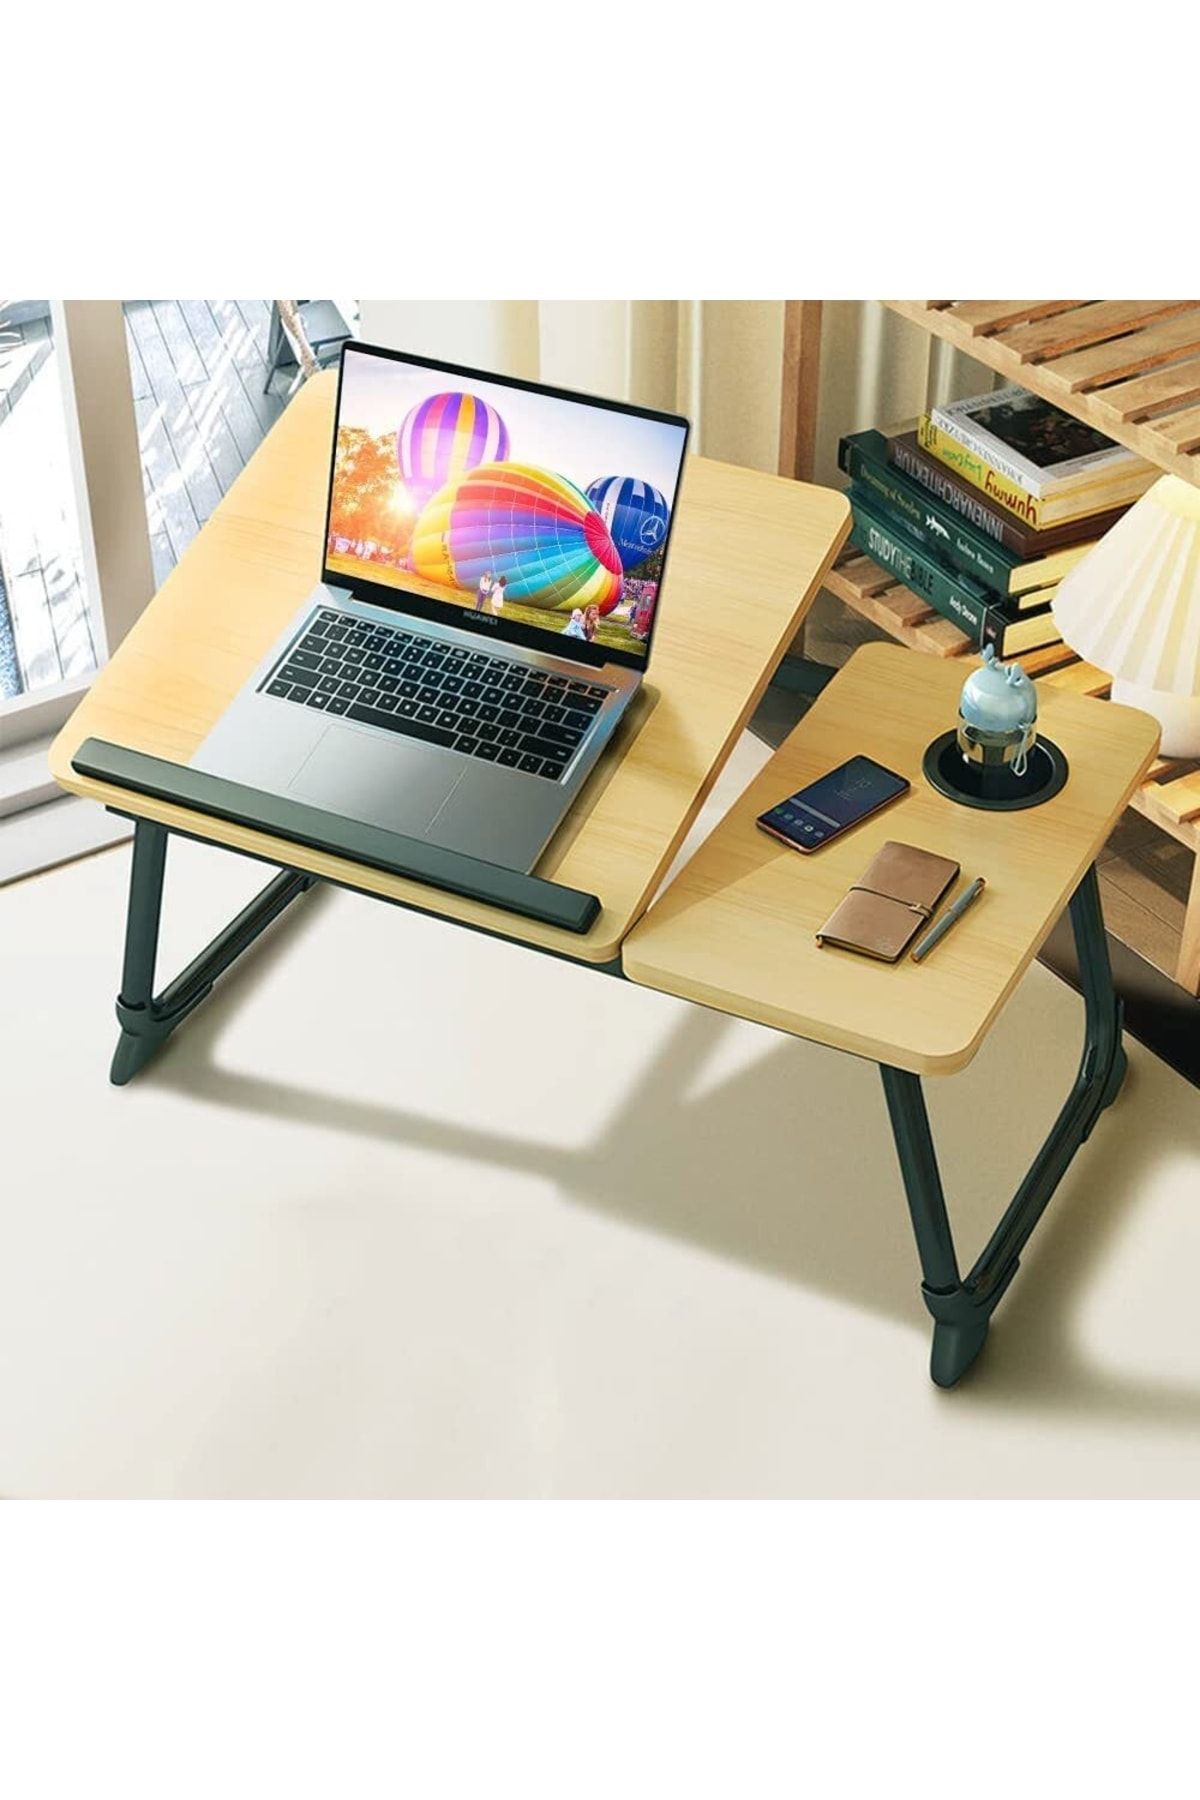 miletus Laptop Standı Yükseltilebilir Ders Çalışma Masası Çocuk Çalışma Sehpası Yatak Sehpası Ders Masası Yk